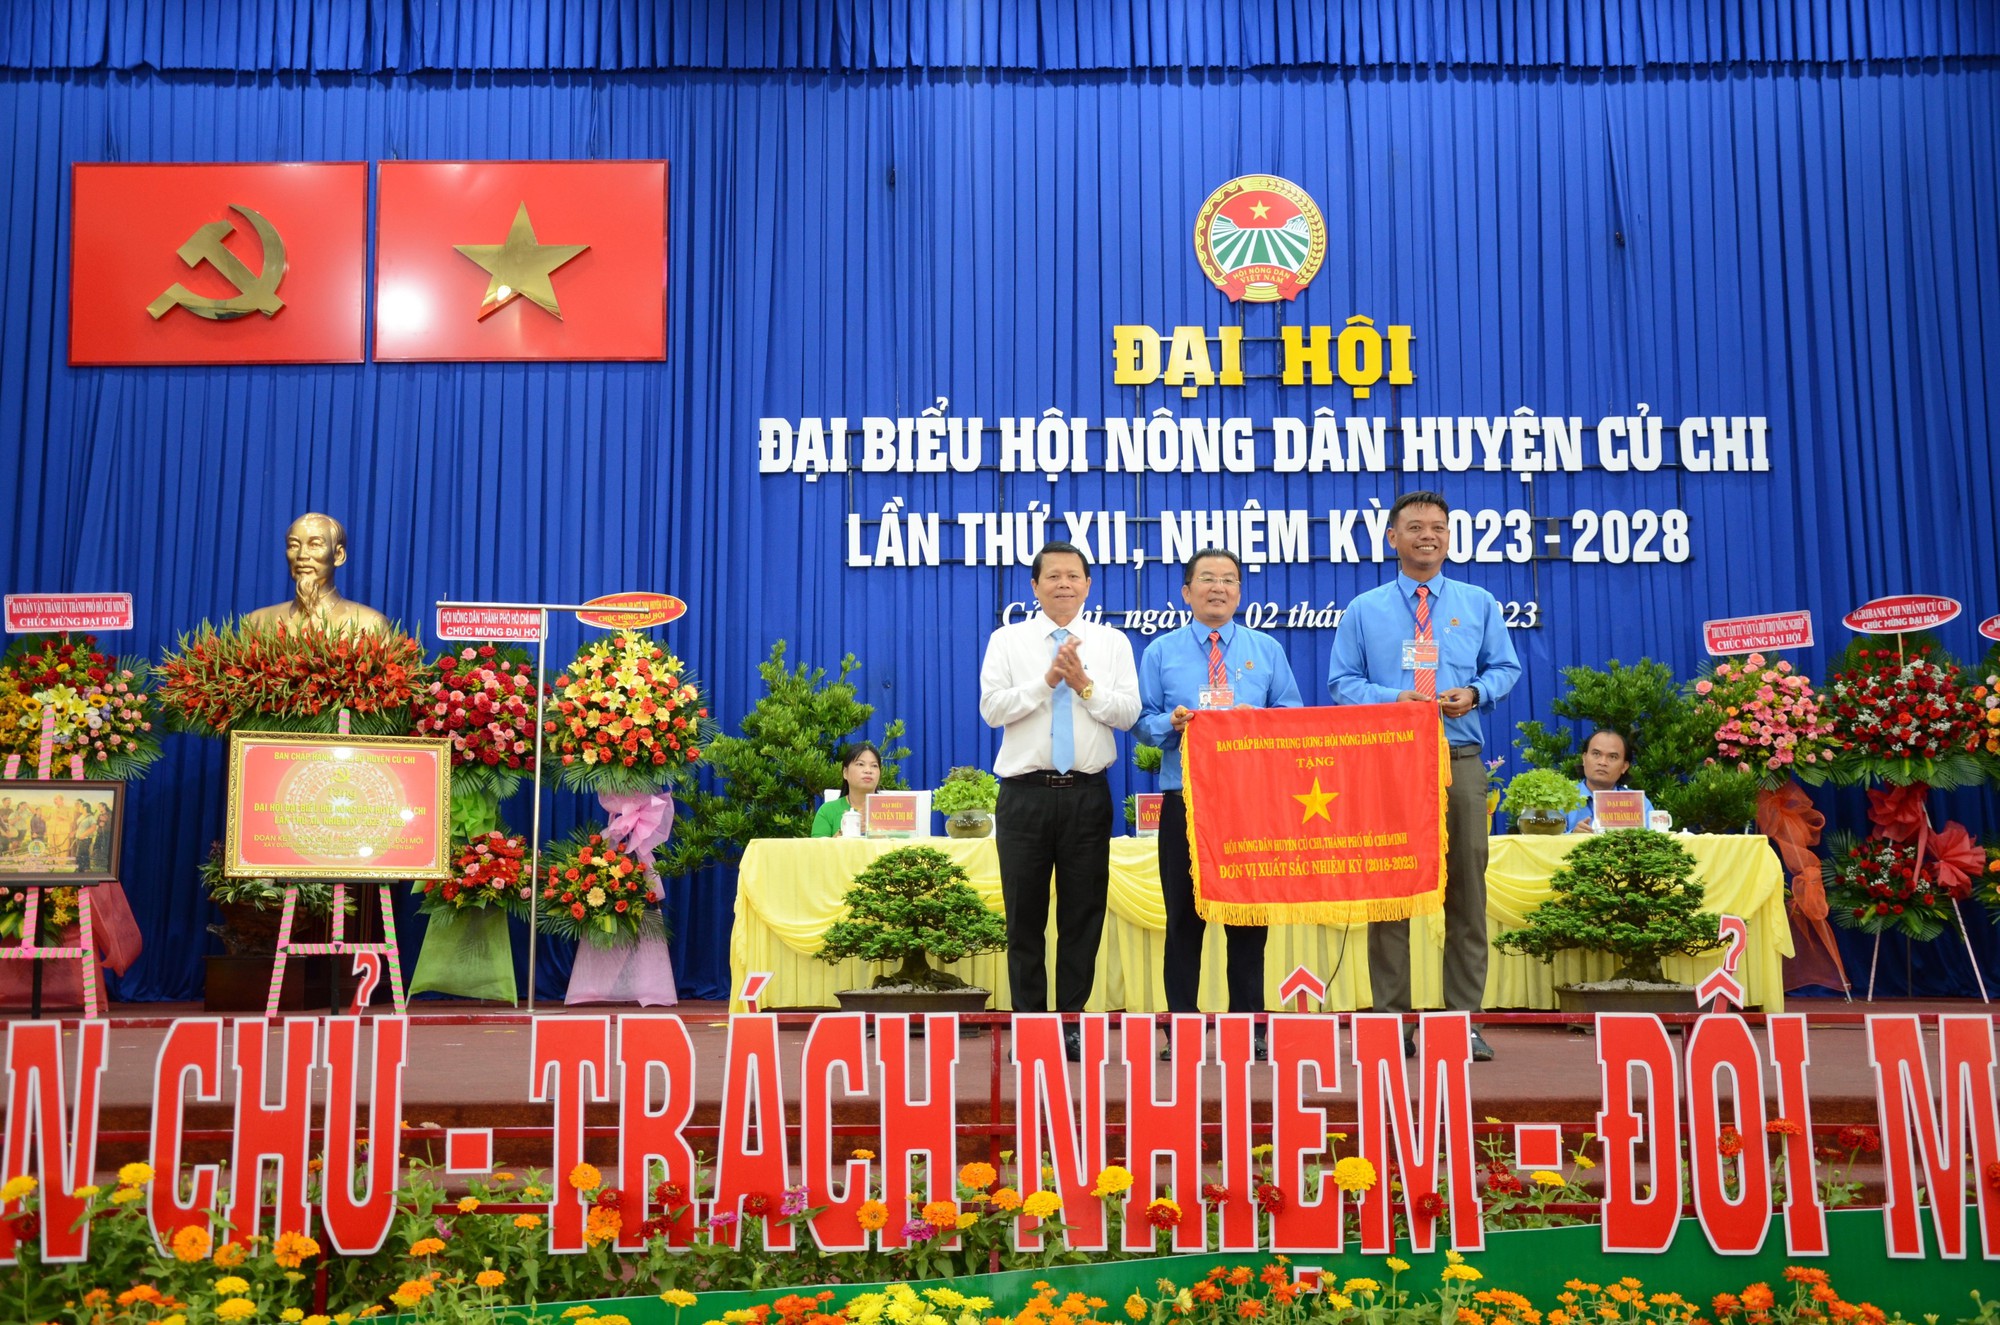 Đại hội Nông dân huyện Củ Chi, ông Võ Văn Thuận tái đắc cử chức Chủ tịch - Ảnh 5.